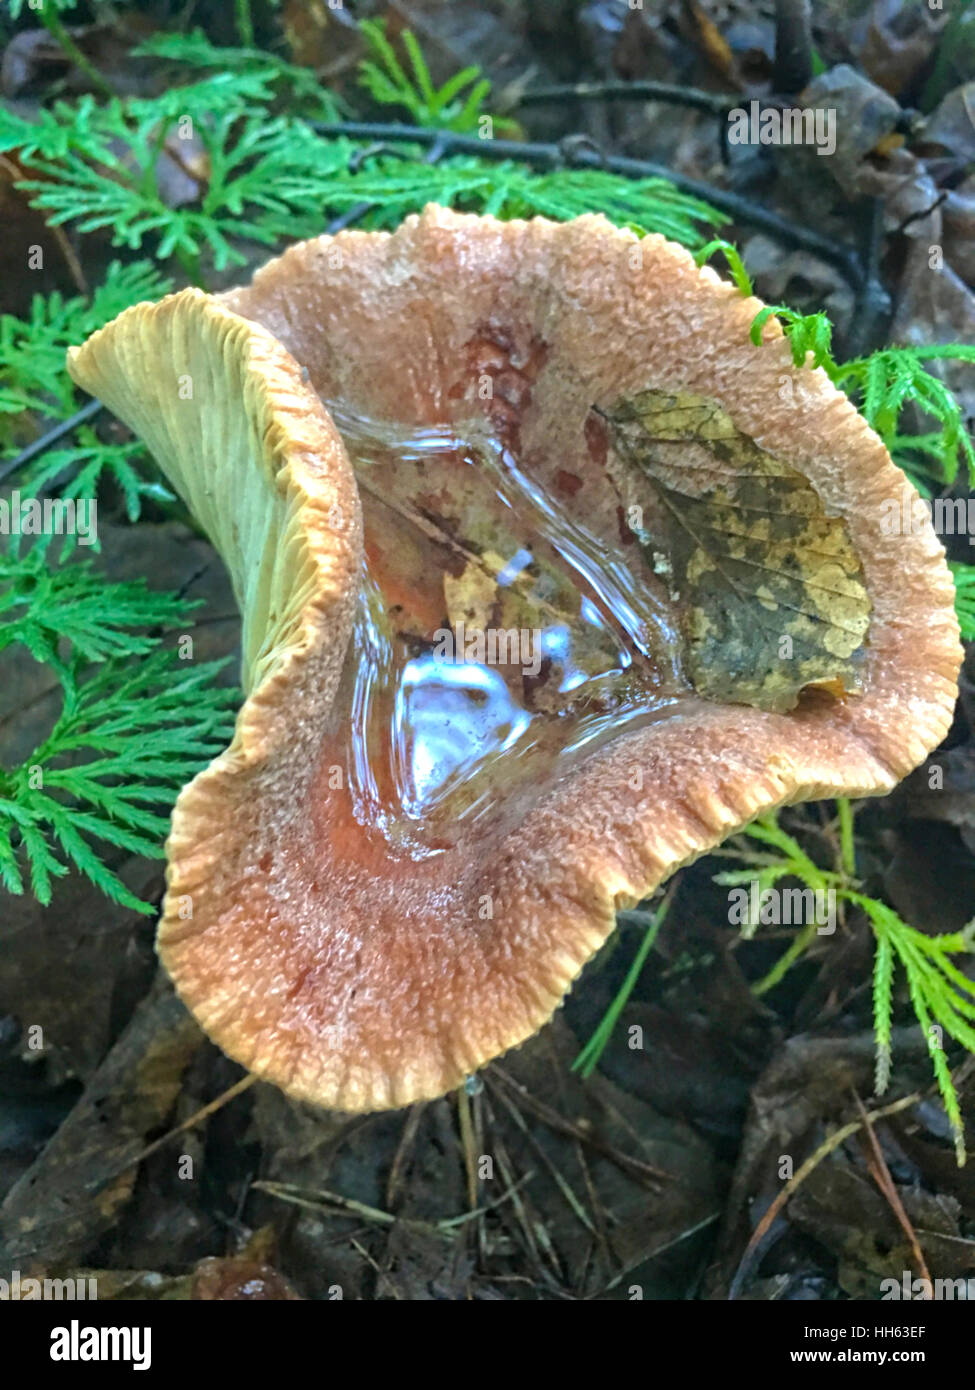 Di funghi selvatici nei boschi dopo una tempesta di pioggia. Foto Stock